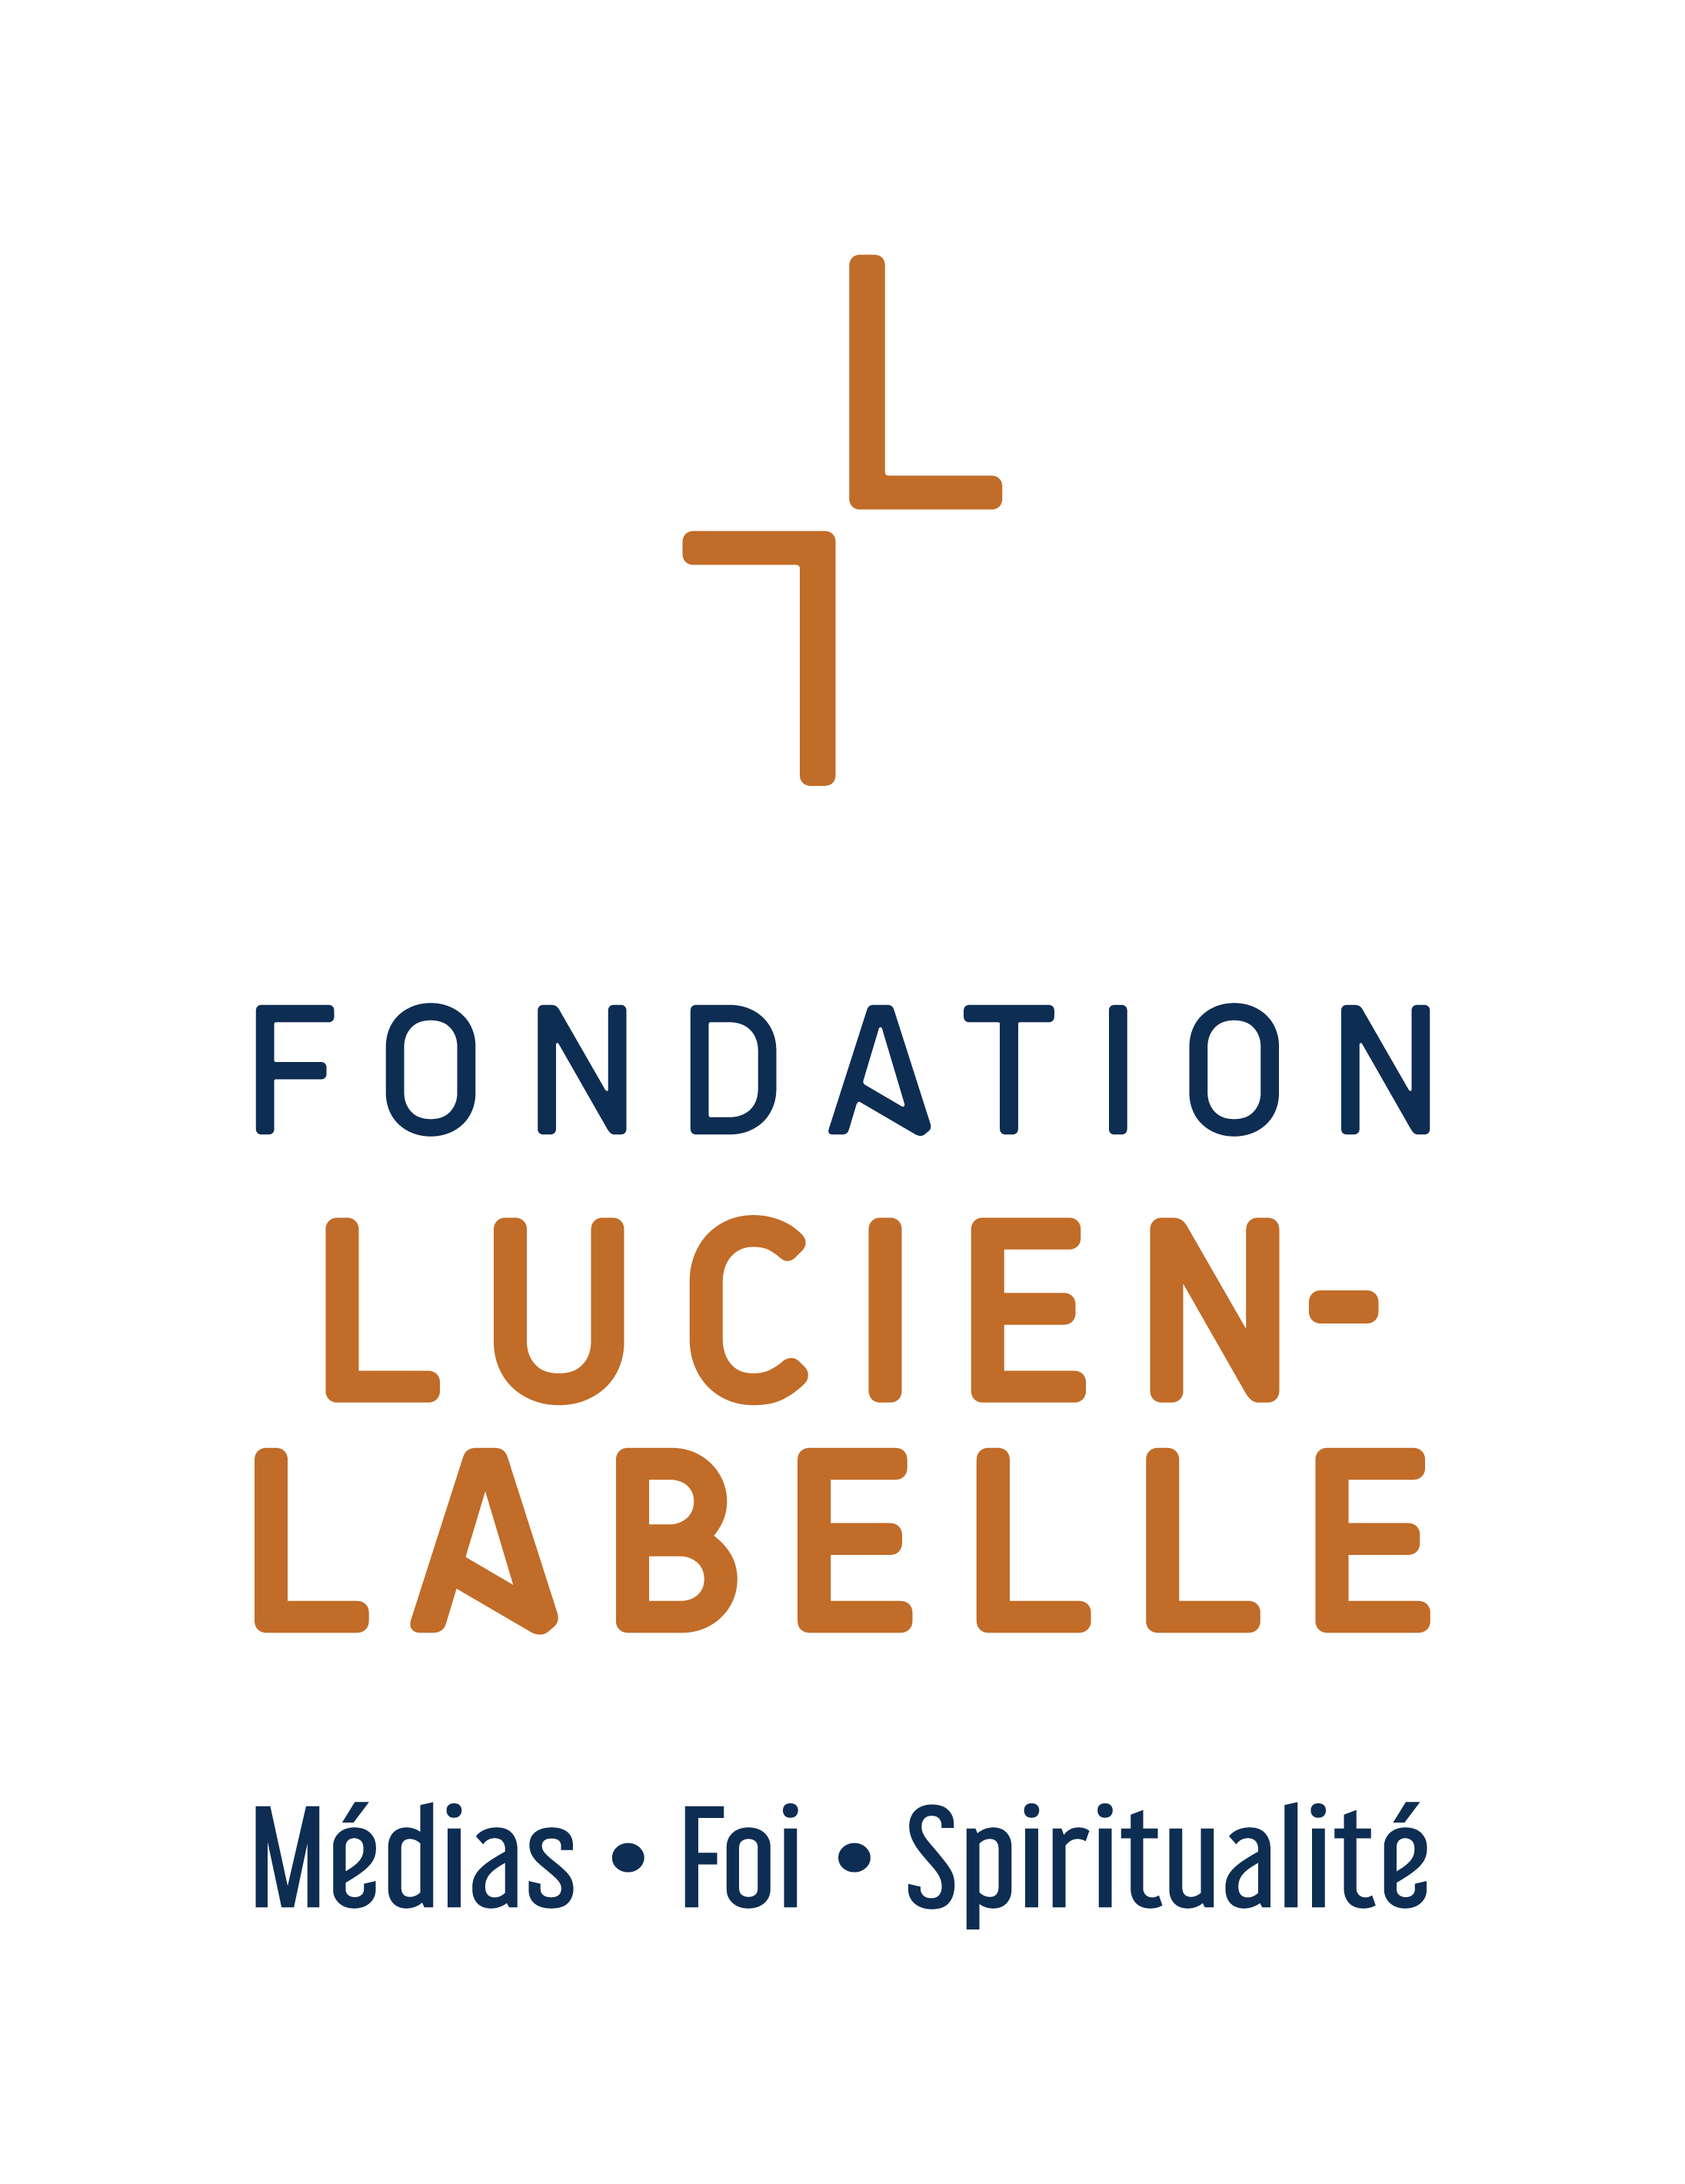 FONDATION LUCIEN-LABELLE